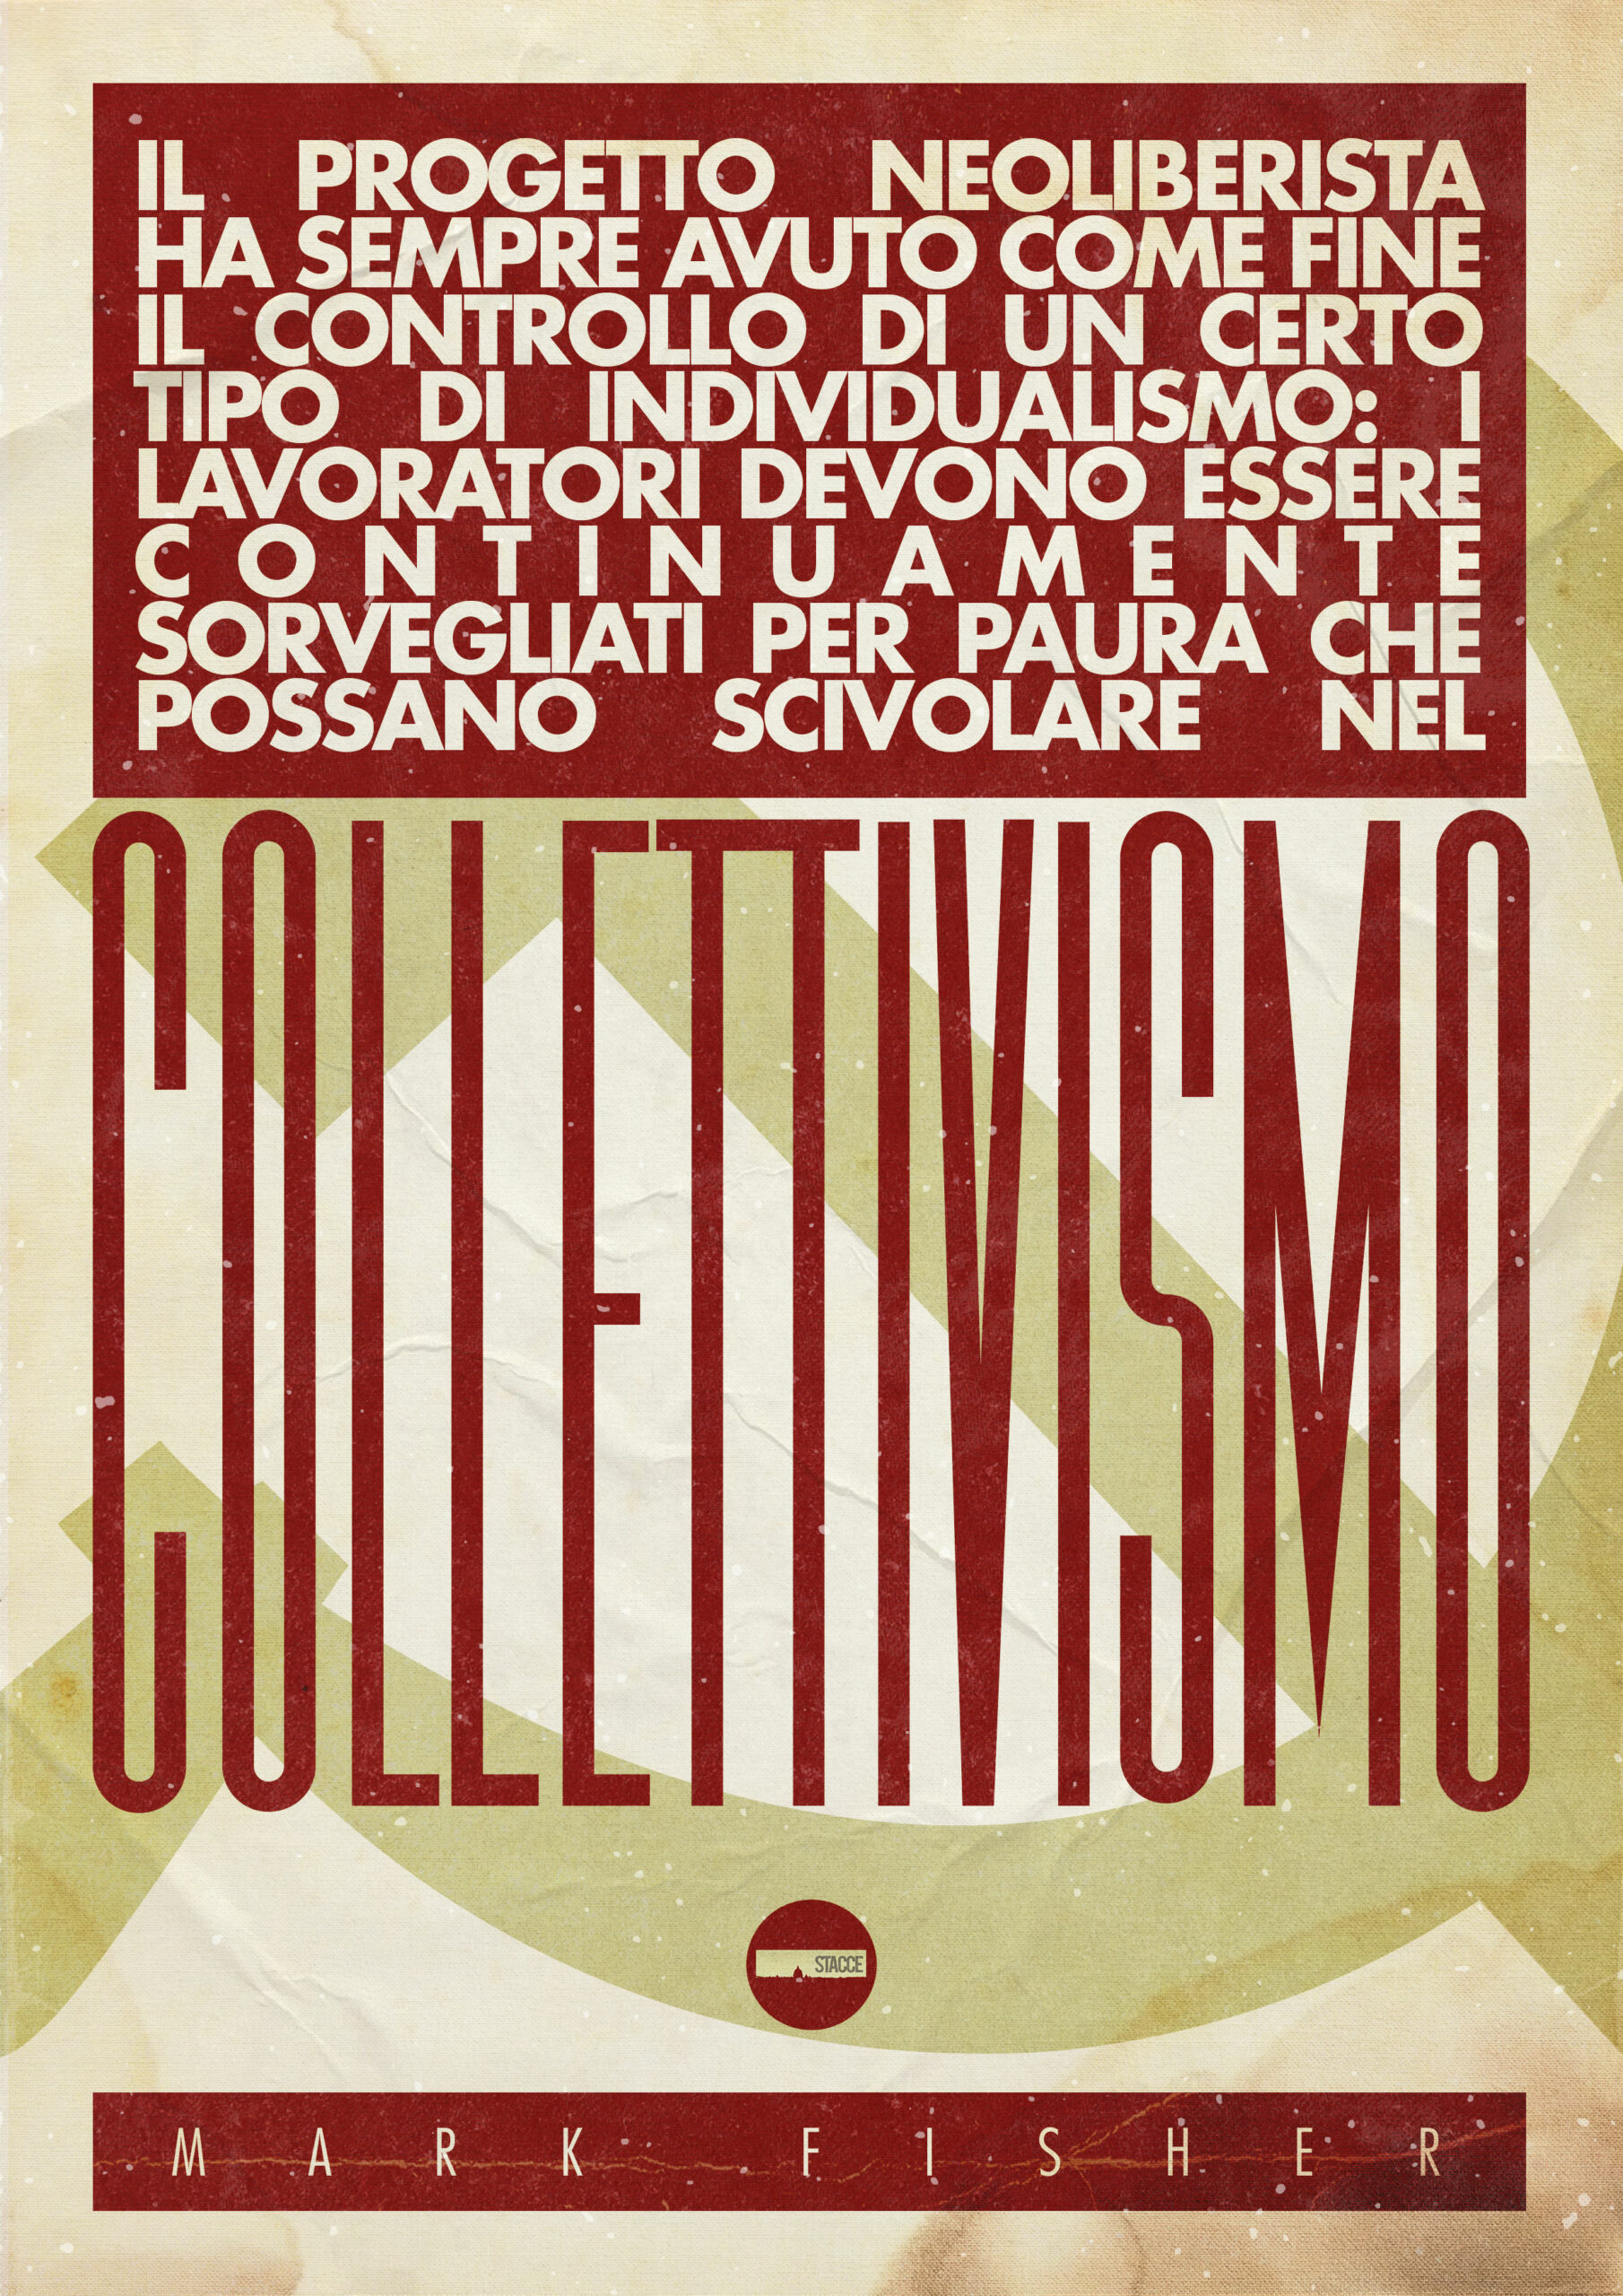 04 – collettivismo